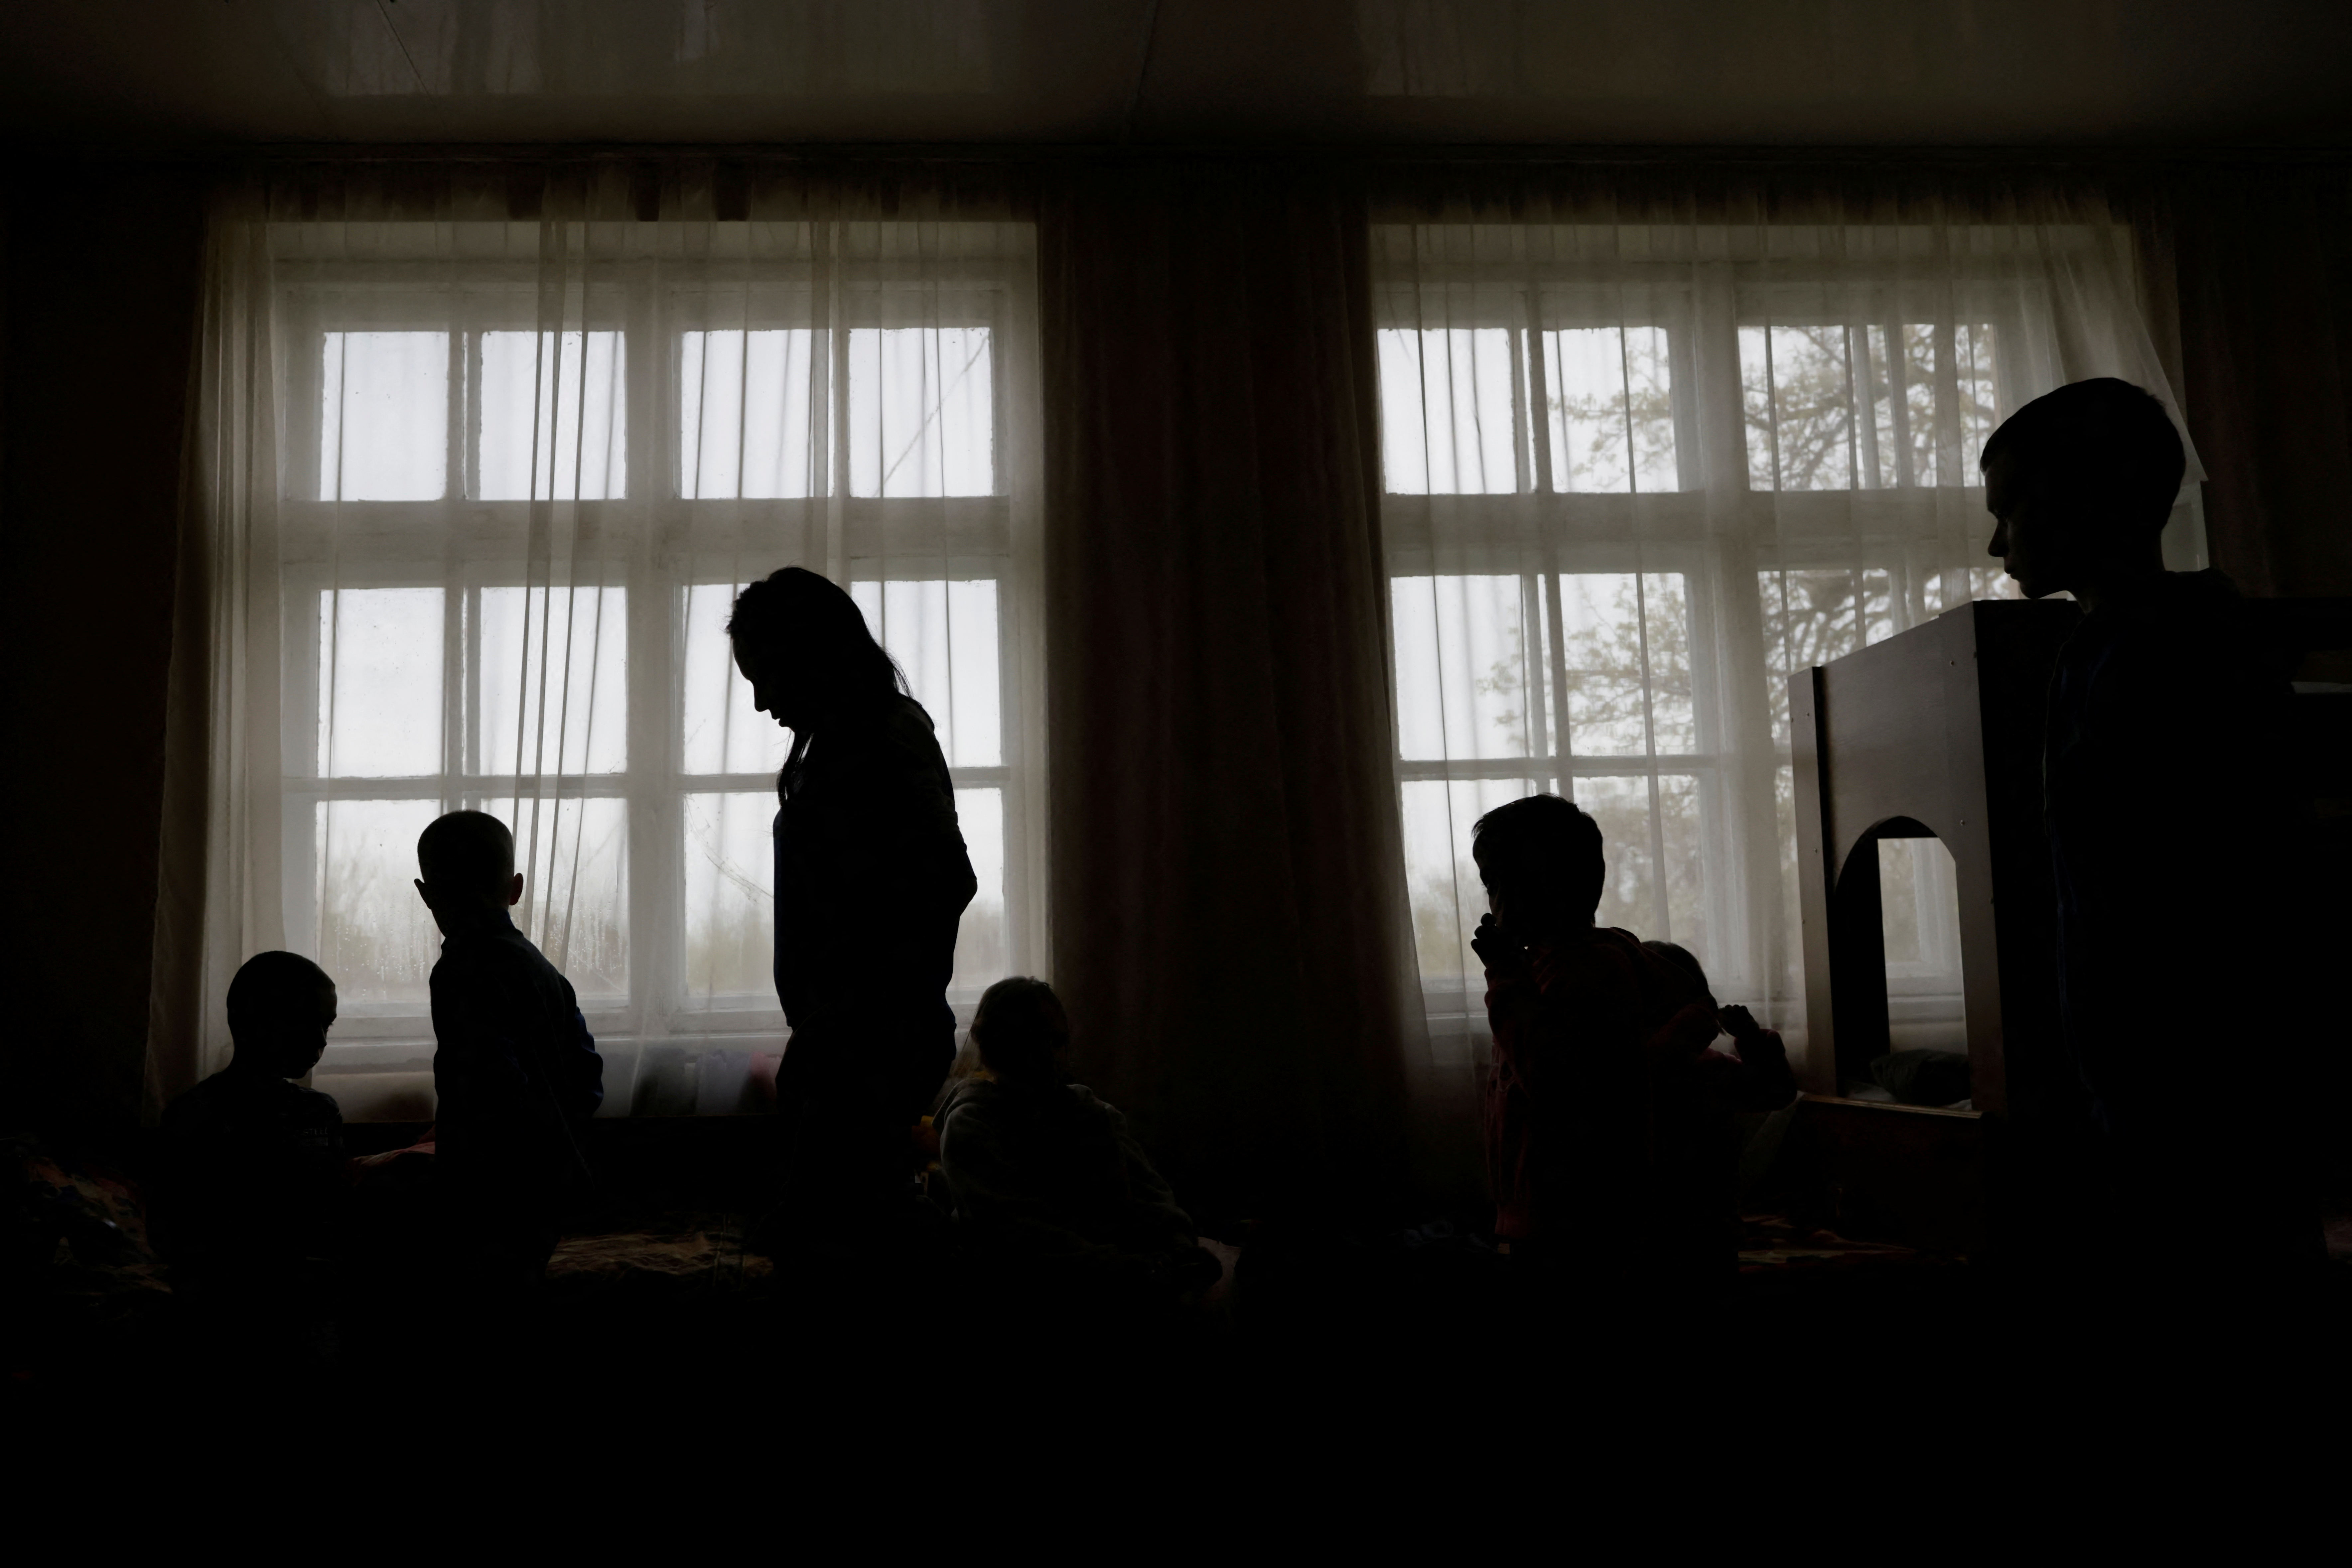 La evacuada Tetyana Davydova y sus hijos se reúnen en un refugio para madres y niños refugiados, que huyen del asedio ruso a Mariupol durante su invasión de Ucrania, en la ciudad de Novomoskovsk, región de Dnipro, Ucrania 23 de abril de 2022. REUTERS/Ueslei Marcelino